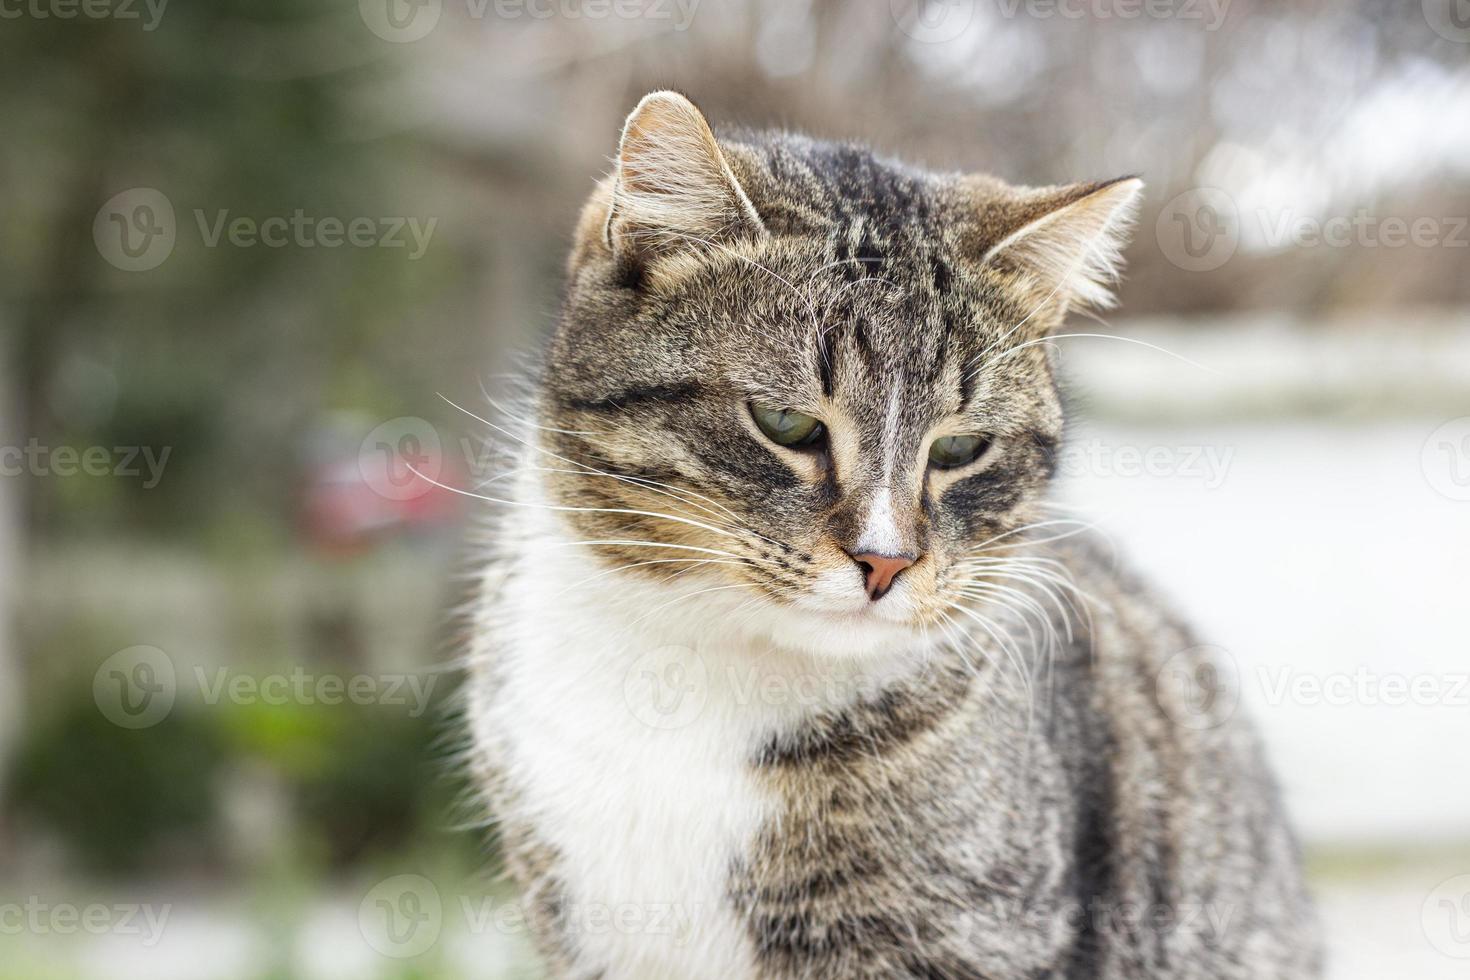 retrato do gato selvagem, o gato vive na rua. retrato de um gato listrado fofo. listrado, não um gatinho de raça pura. foto